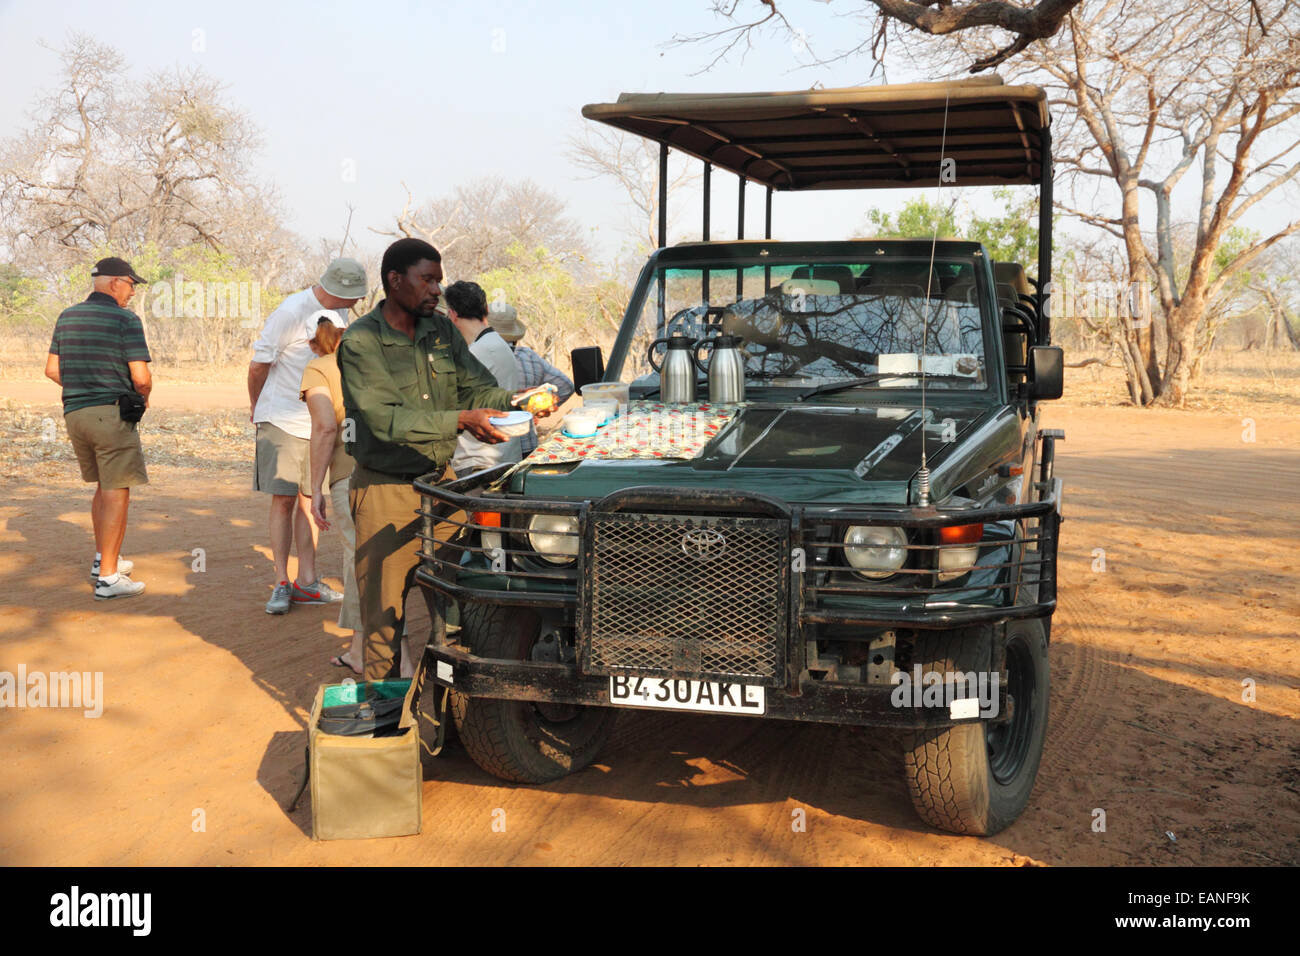 Eine Gruppe von Touristen, die eine Erfrischung Pause um ein Safari-Fahrzeug in einem afrikanischen Wildpark. Stockfoto